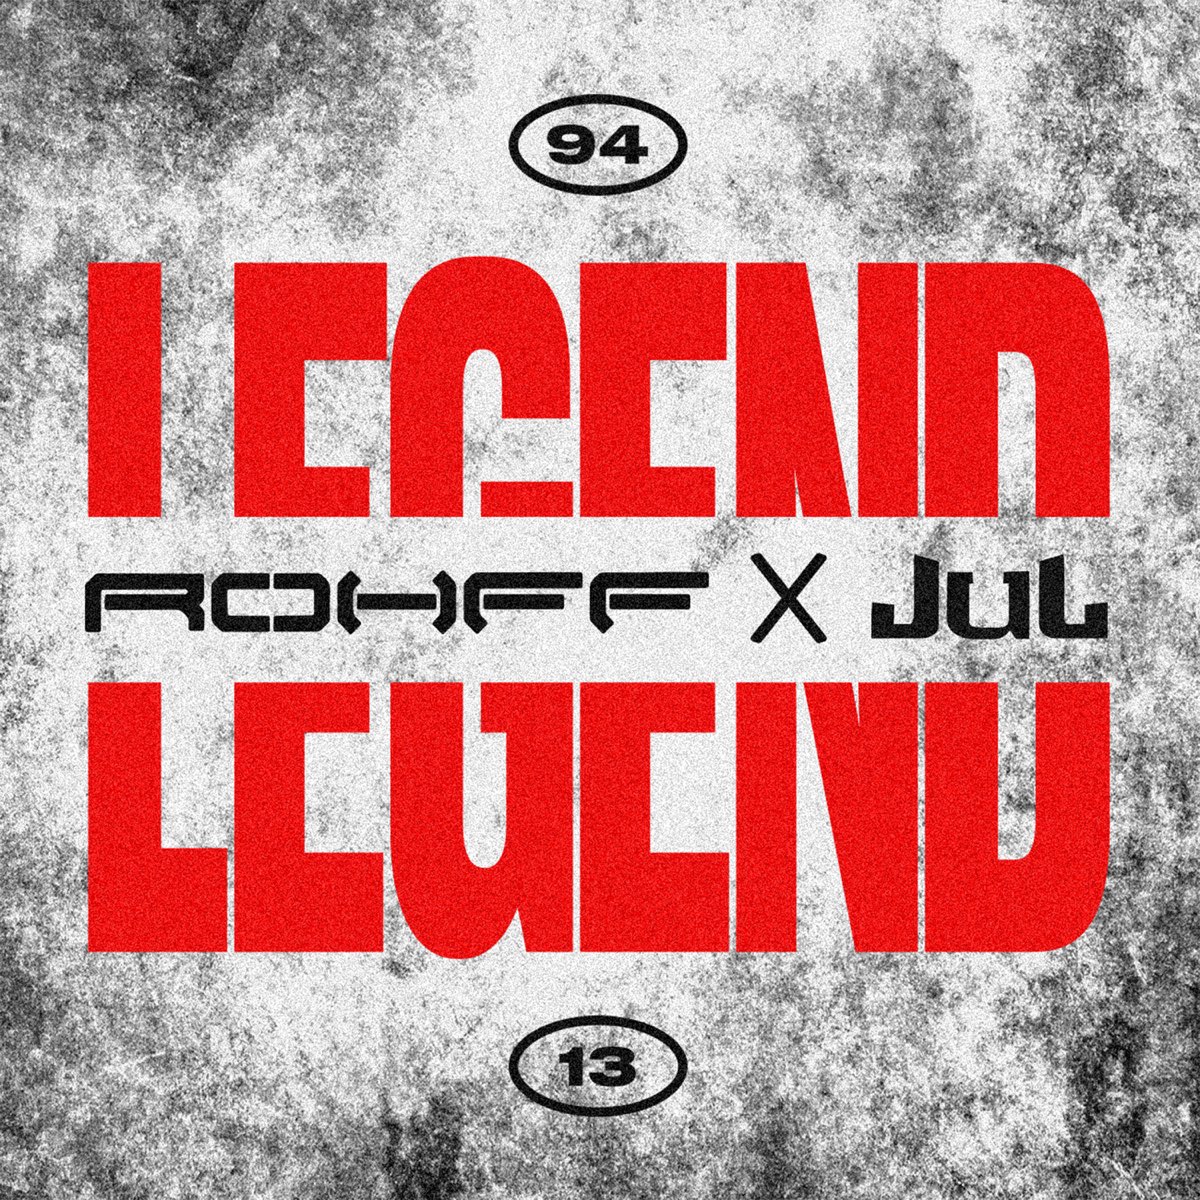 Legend (feat. Jul) - Single par Rohff sur Apple Music